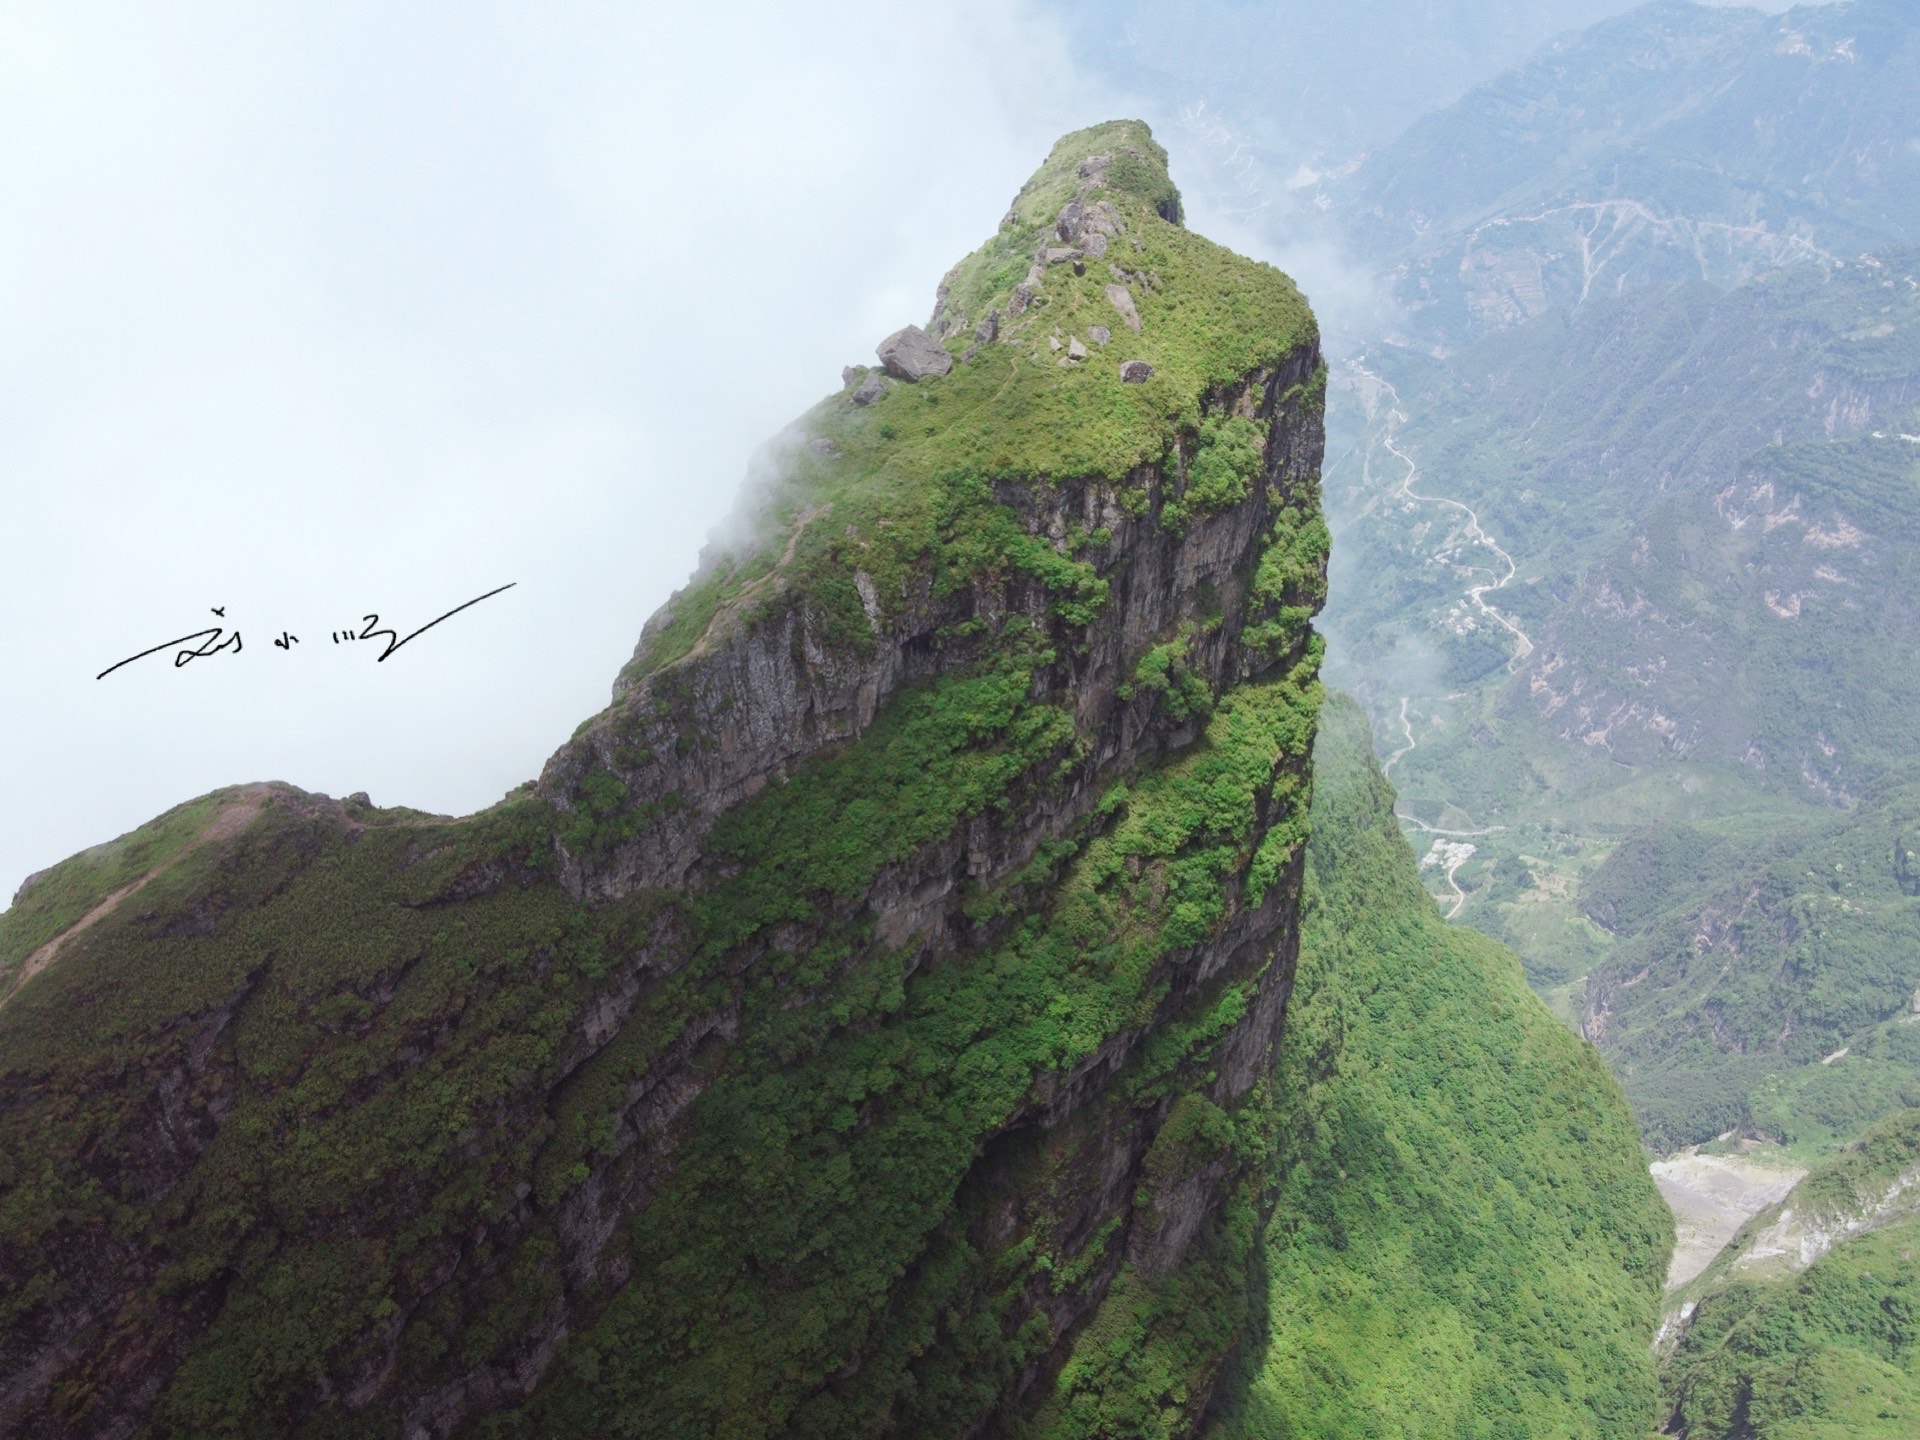 实拍云南昭通鸡公山,三面绝壁,峡谷深达2600米,游客却不多